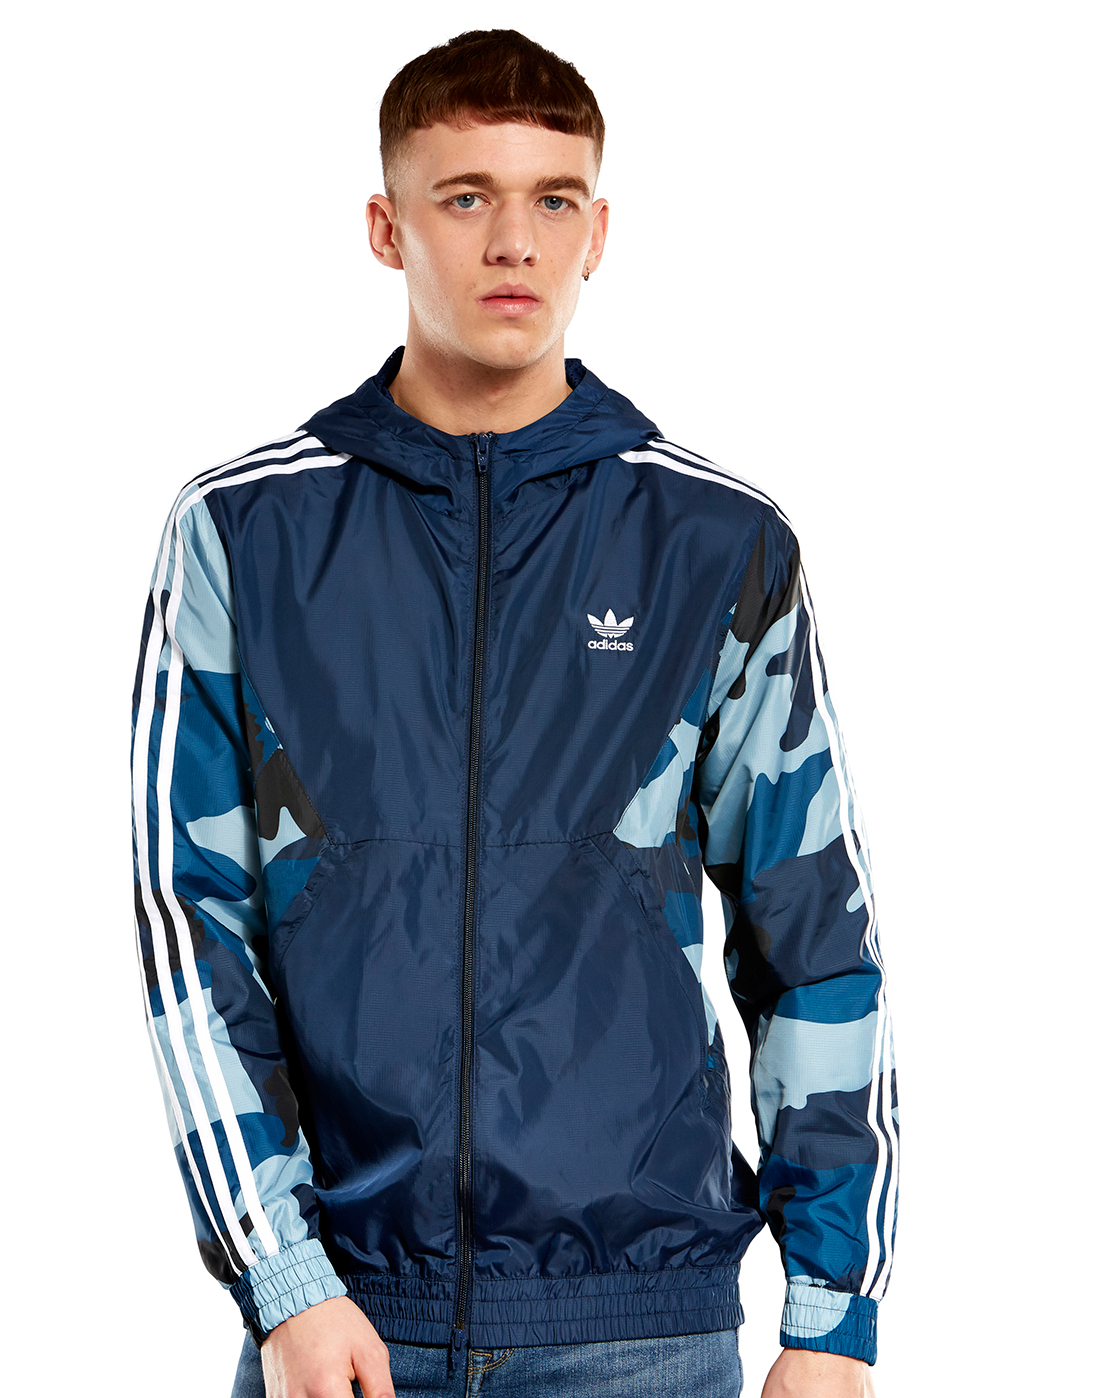 adidas windbreaker camo jacket